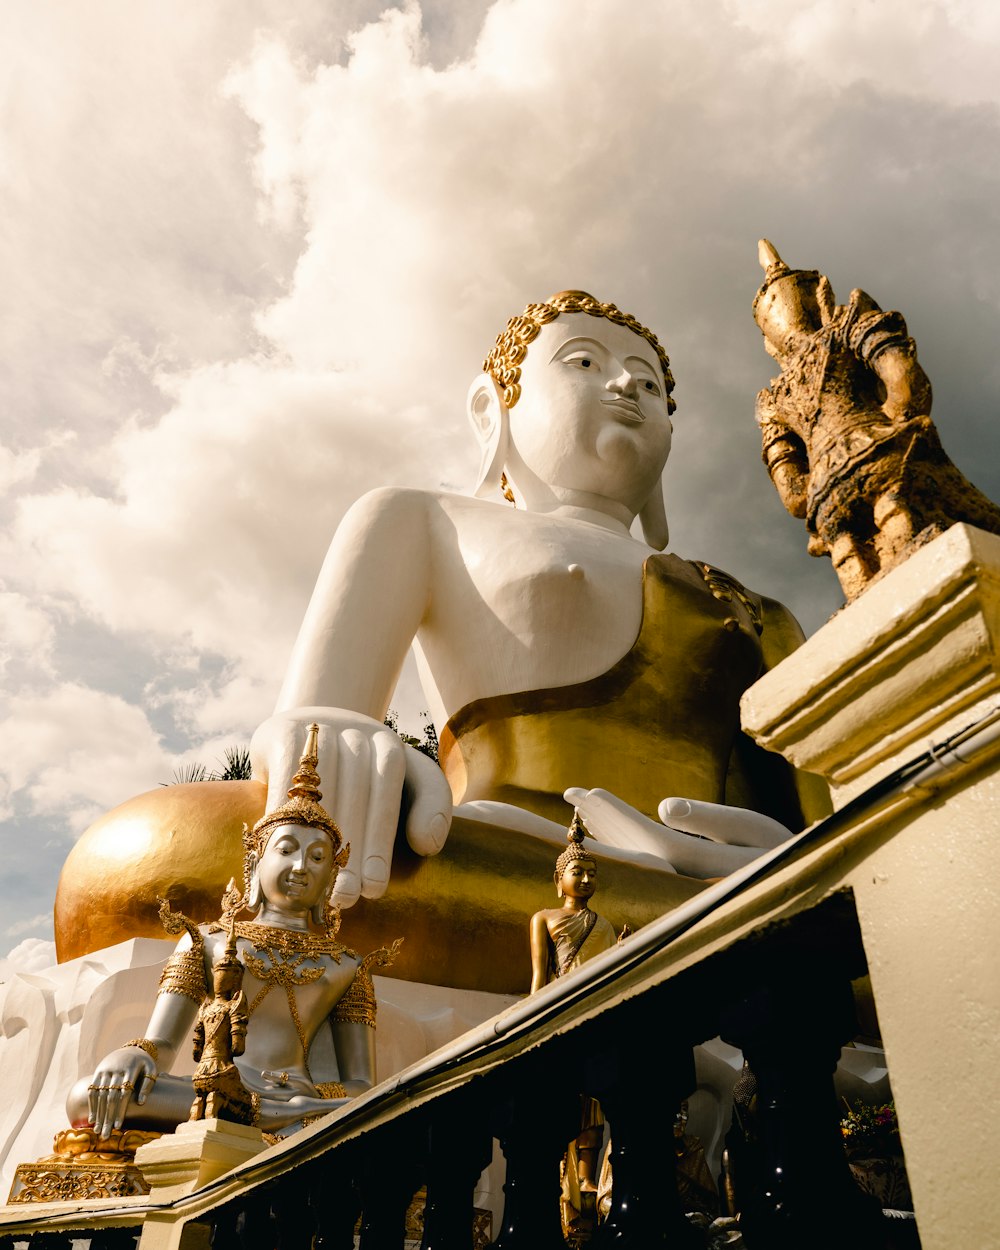 una statua di una persona seduta in cima a una statua d'oro